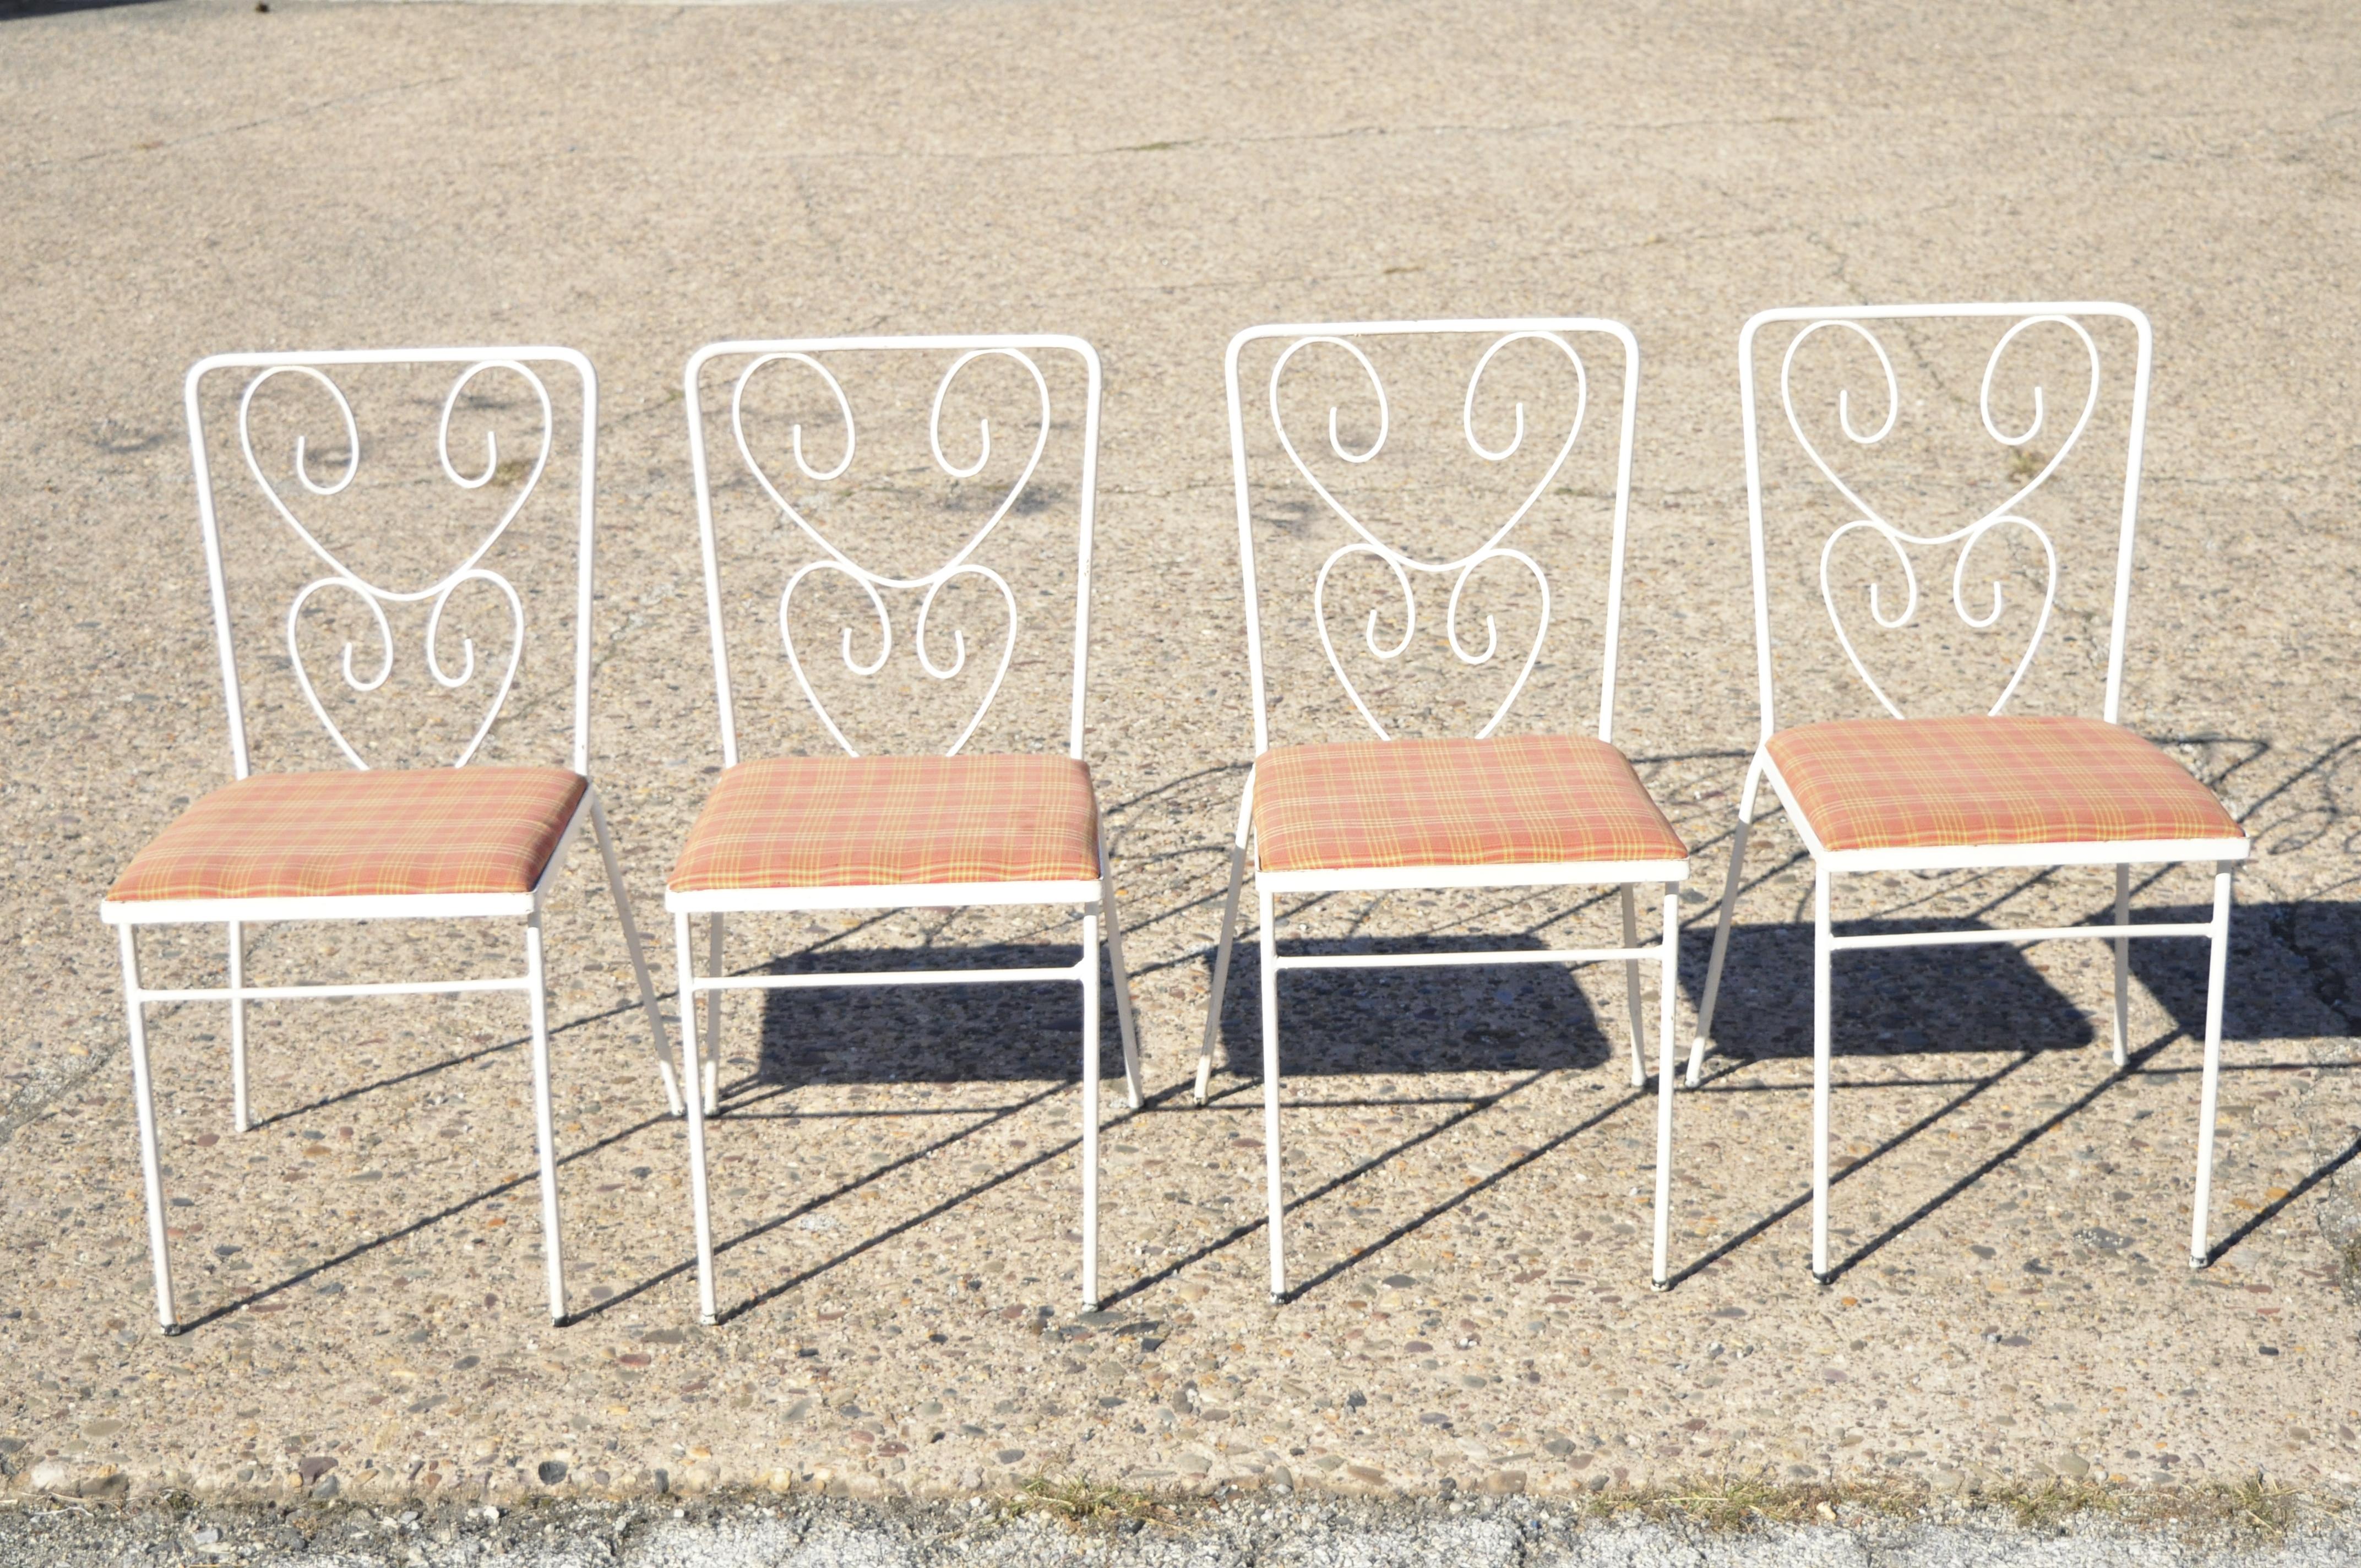 Vintage Französisch viktorianischen Stil Schmiedeeisen Blume Garten Terrasse Ess-Set - 5 Stück gesetzt. Set besteht aus (4) Stühlen, (1) Tisch mit Glasplatte, Blumenrücken, schmiedeeiserne Konstruktion, sehr schönes Vintage-Set, großartiger Stil und